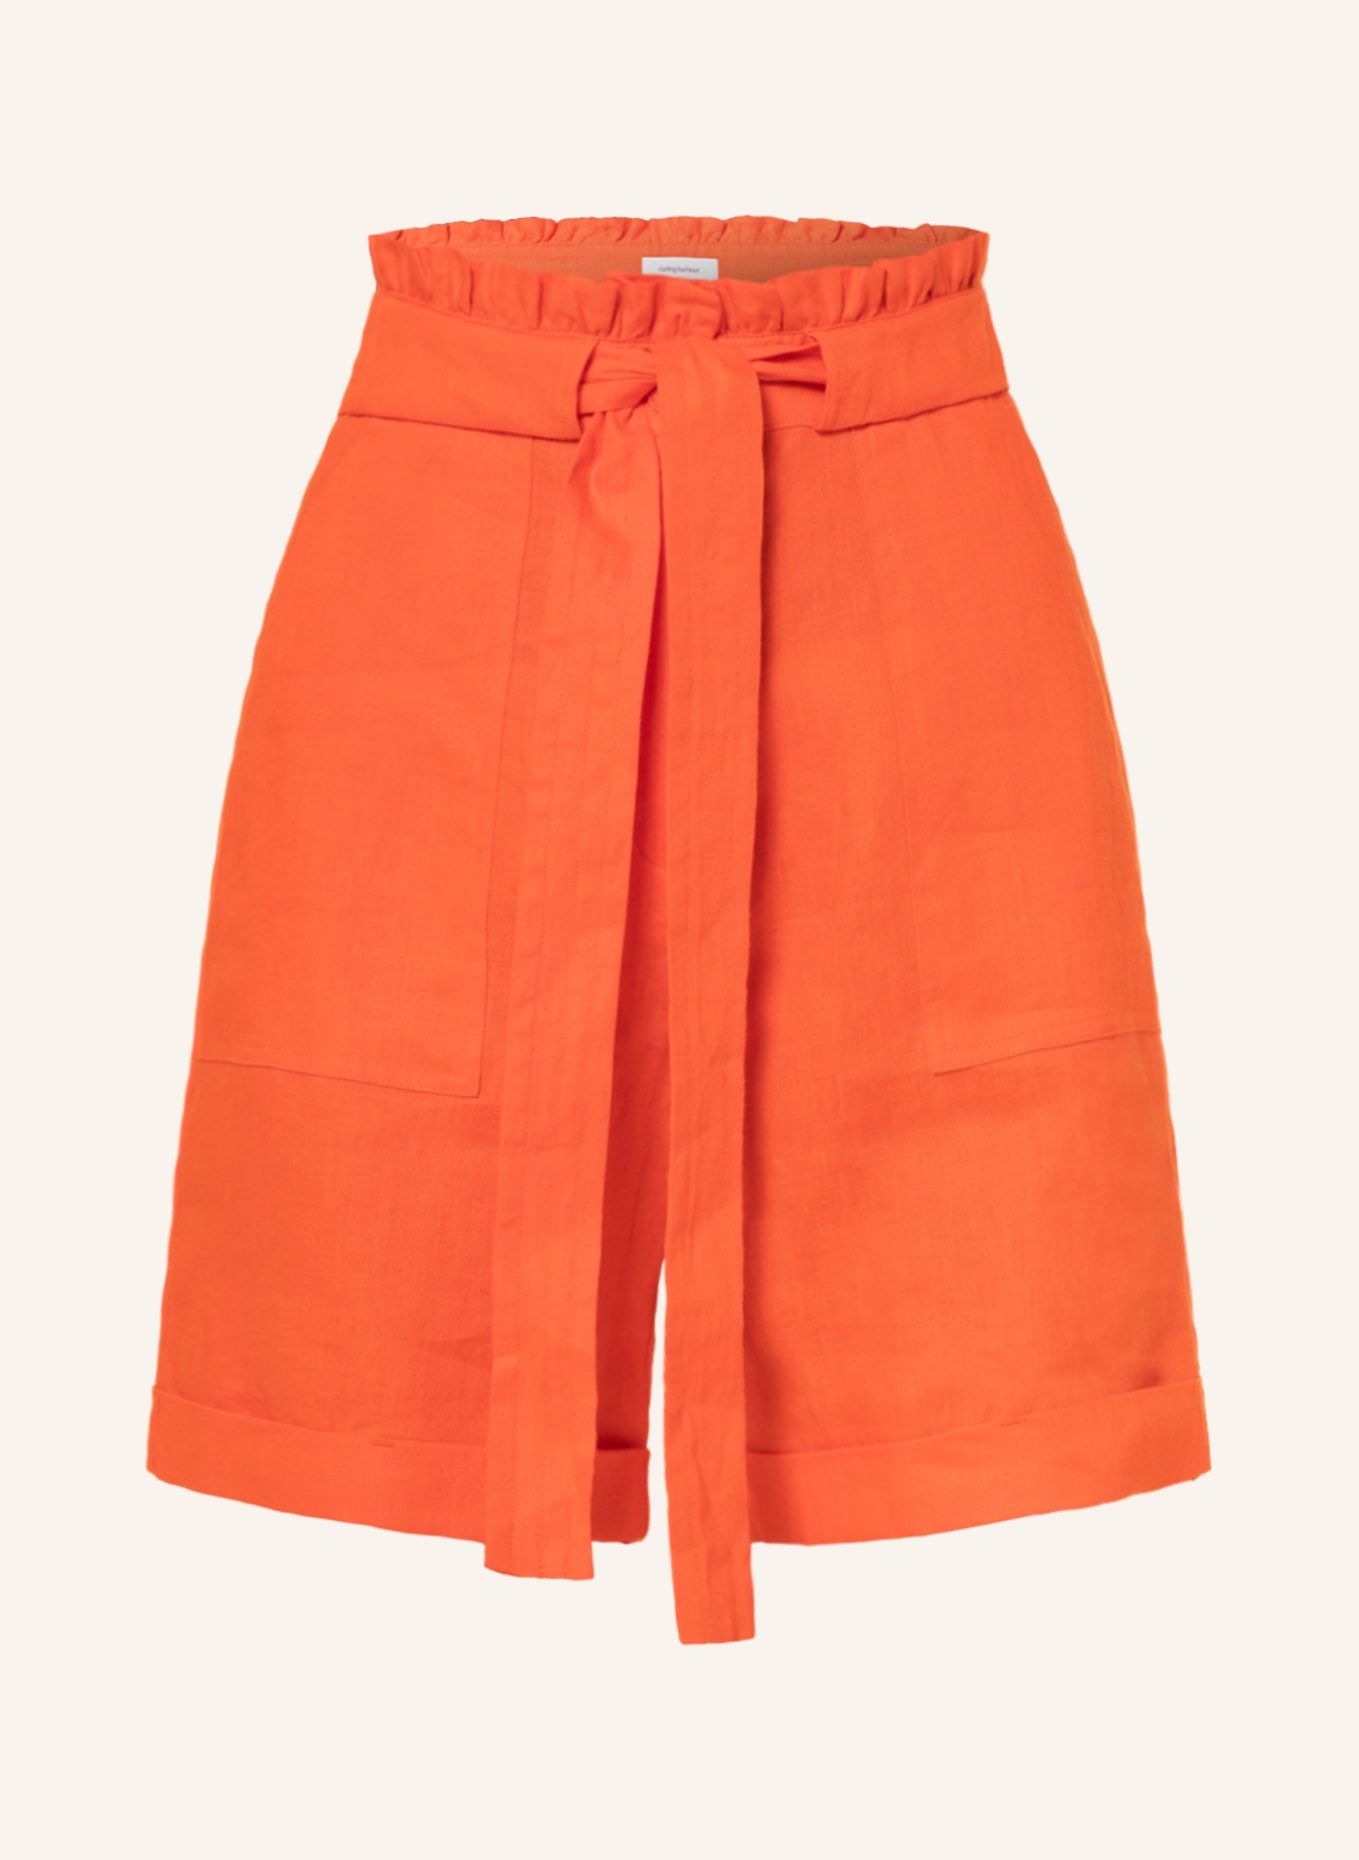 darling harbour Paperbag linen shorts, Color: ORANGE (Image 1)